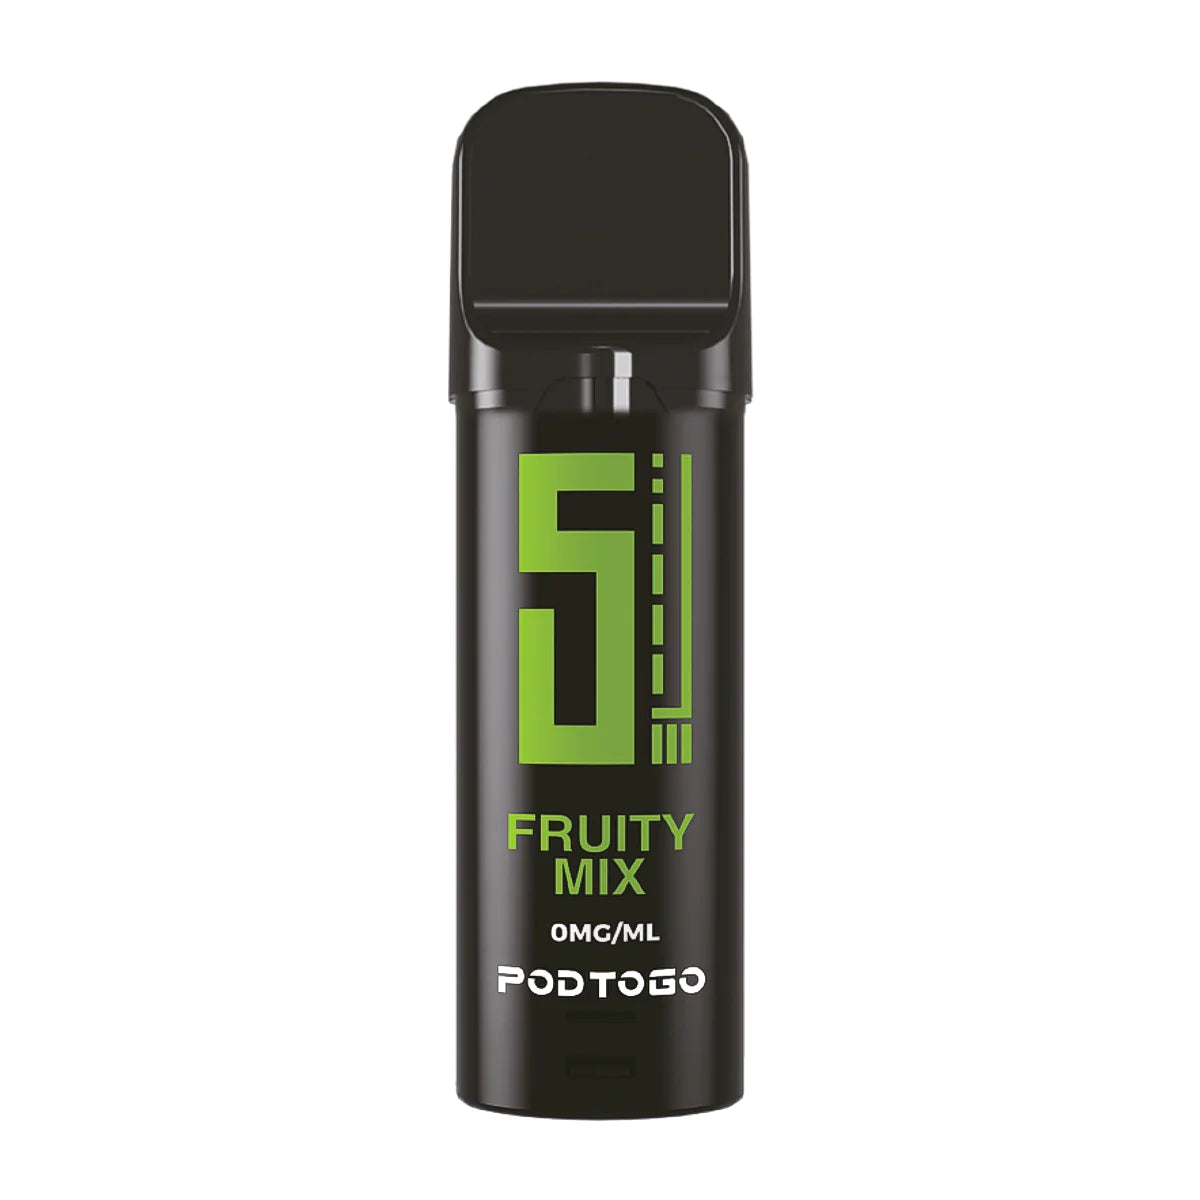 5EL - PODTOGO - Fruity Mix 0mg - Fruchtmix Liquid